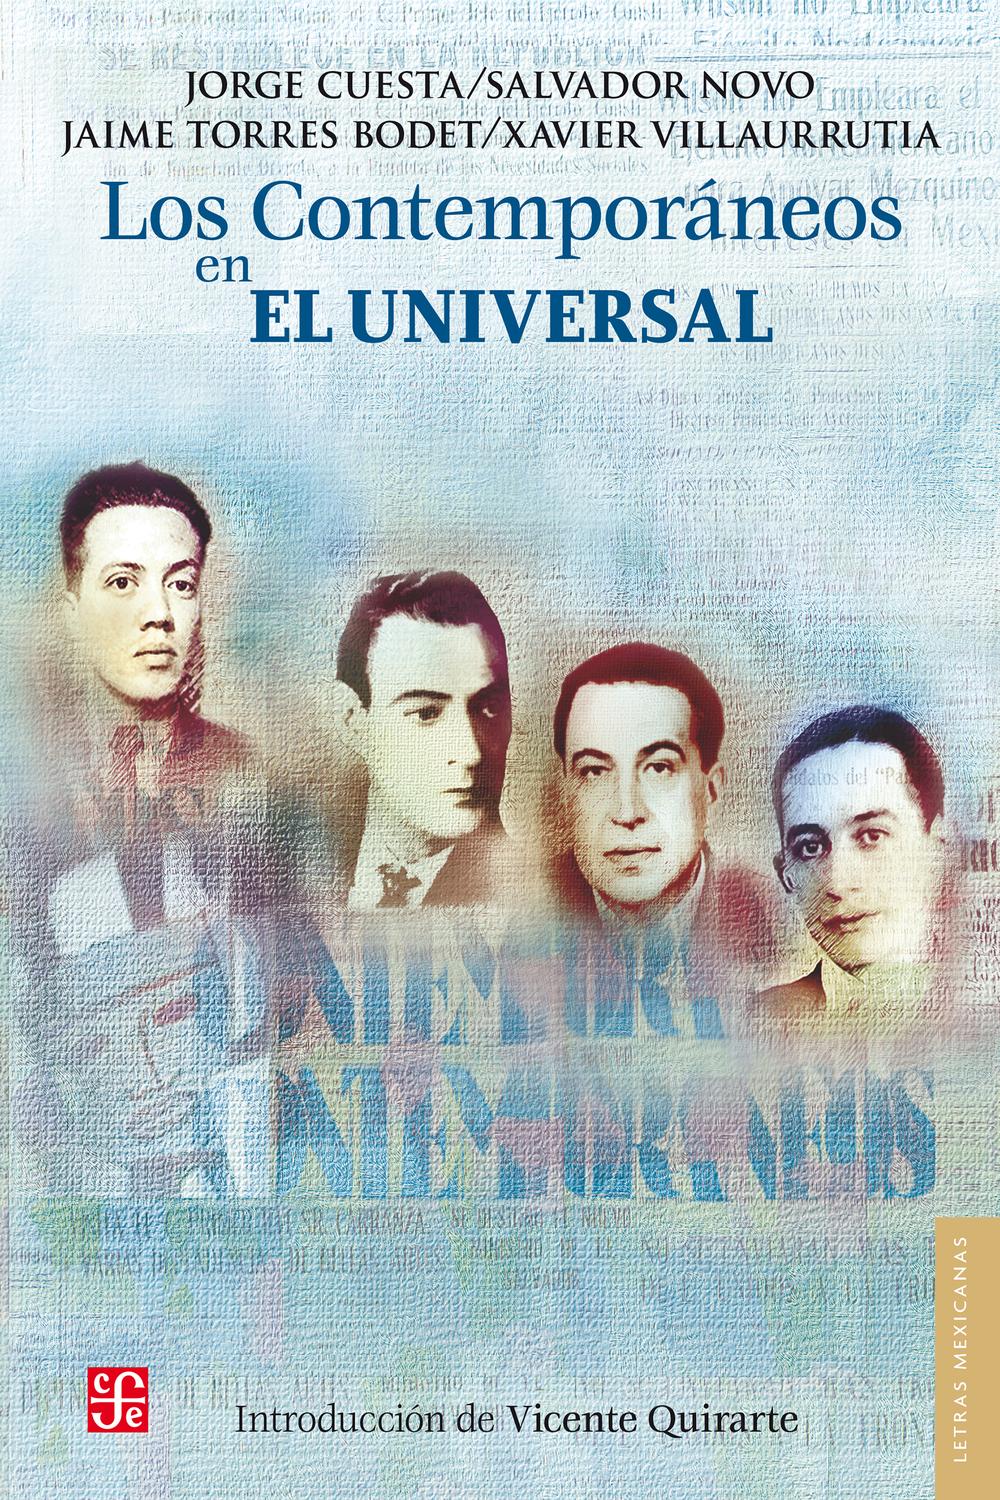 Los Contemporáneos en El Universal - Jorge Cuesta, Salvador Novo, Jaime Torres Bodet, Xavier Villaurrutia